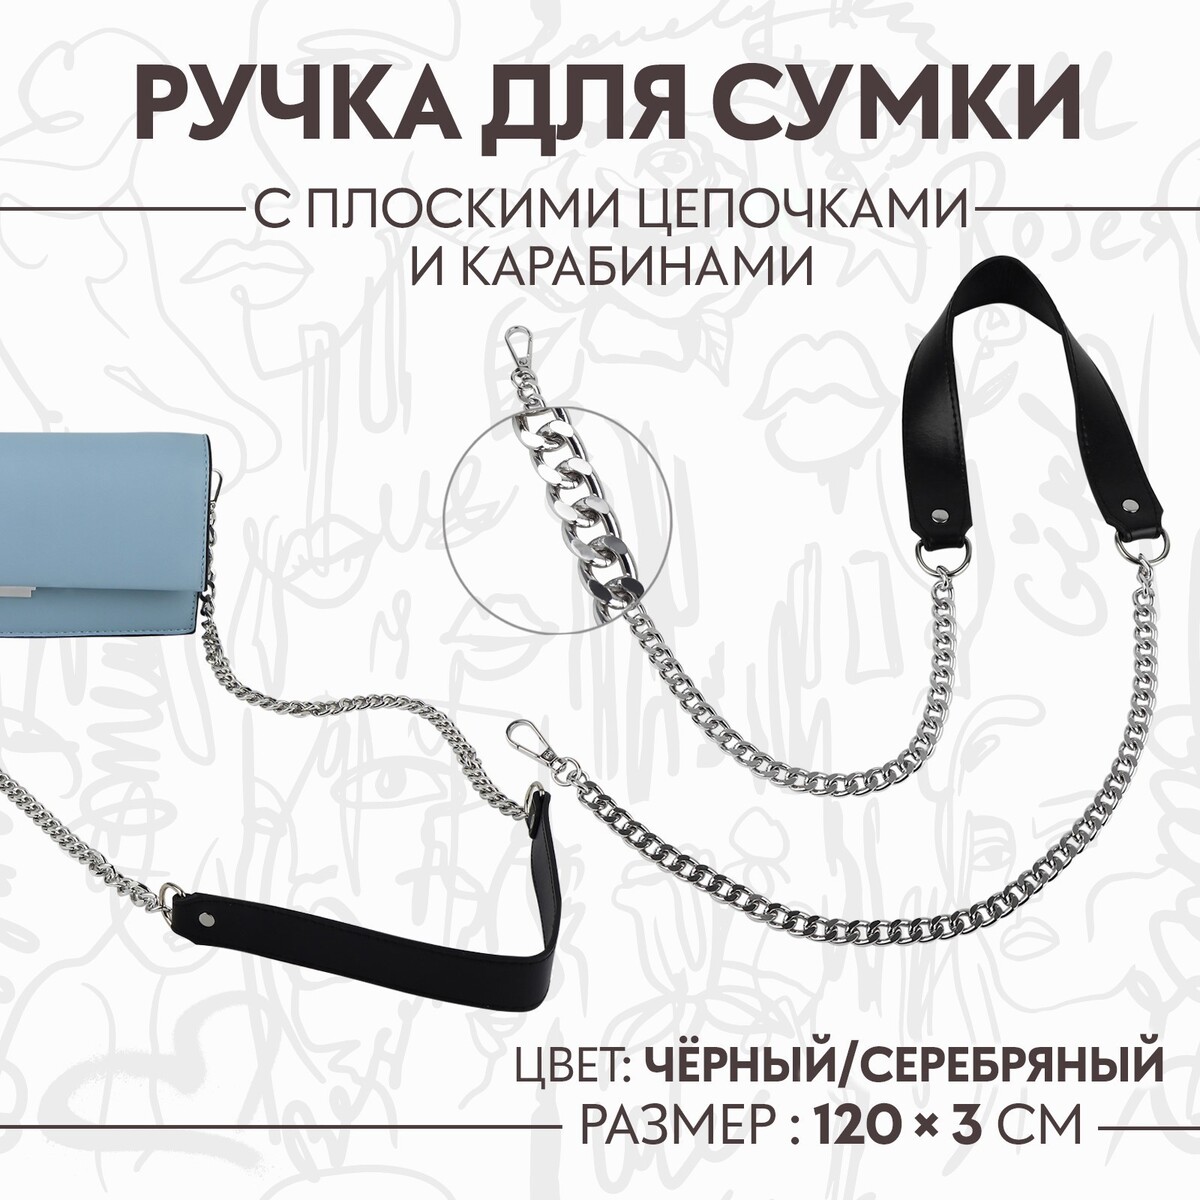 Ручка для сумки, с плоскими цепочками и карабинами, 120 × 3 см, цвет черный/серебряный ручка для сумки канат 60 × 1 5 см с карабинами кремовый серебряный